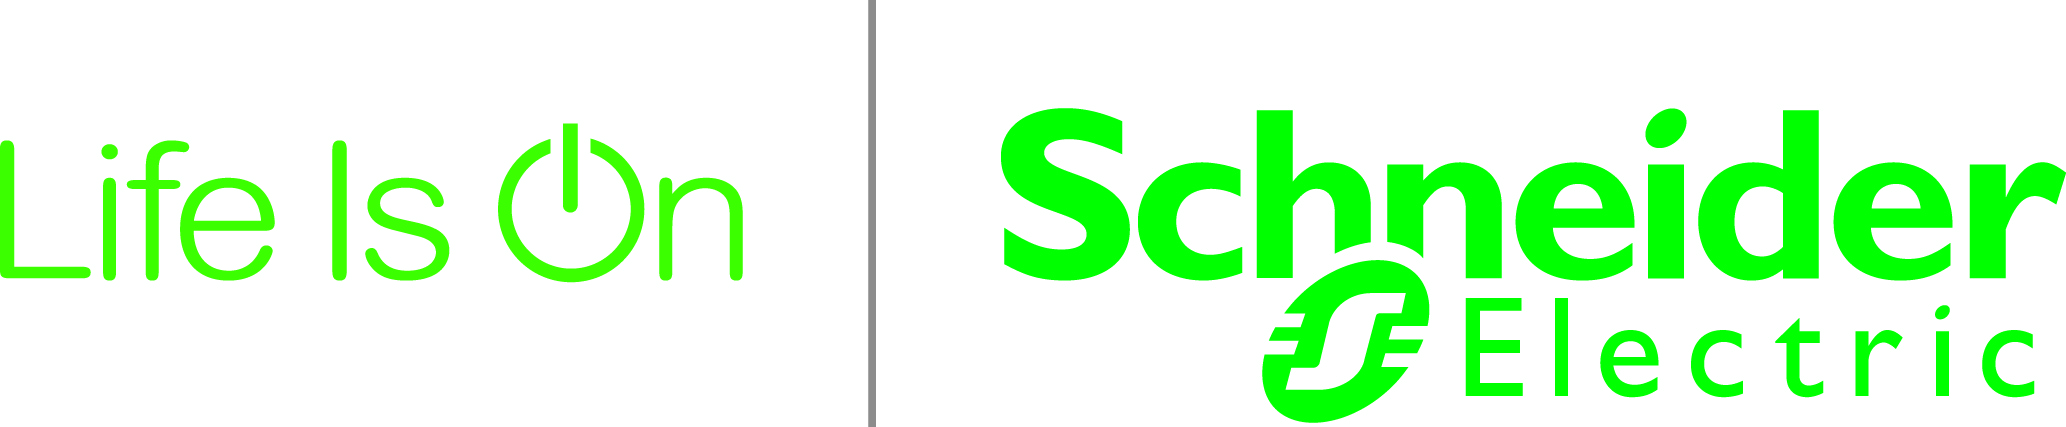 sch_lifeison_logo.jpg